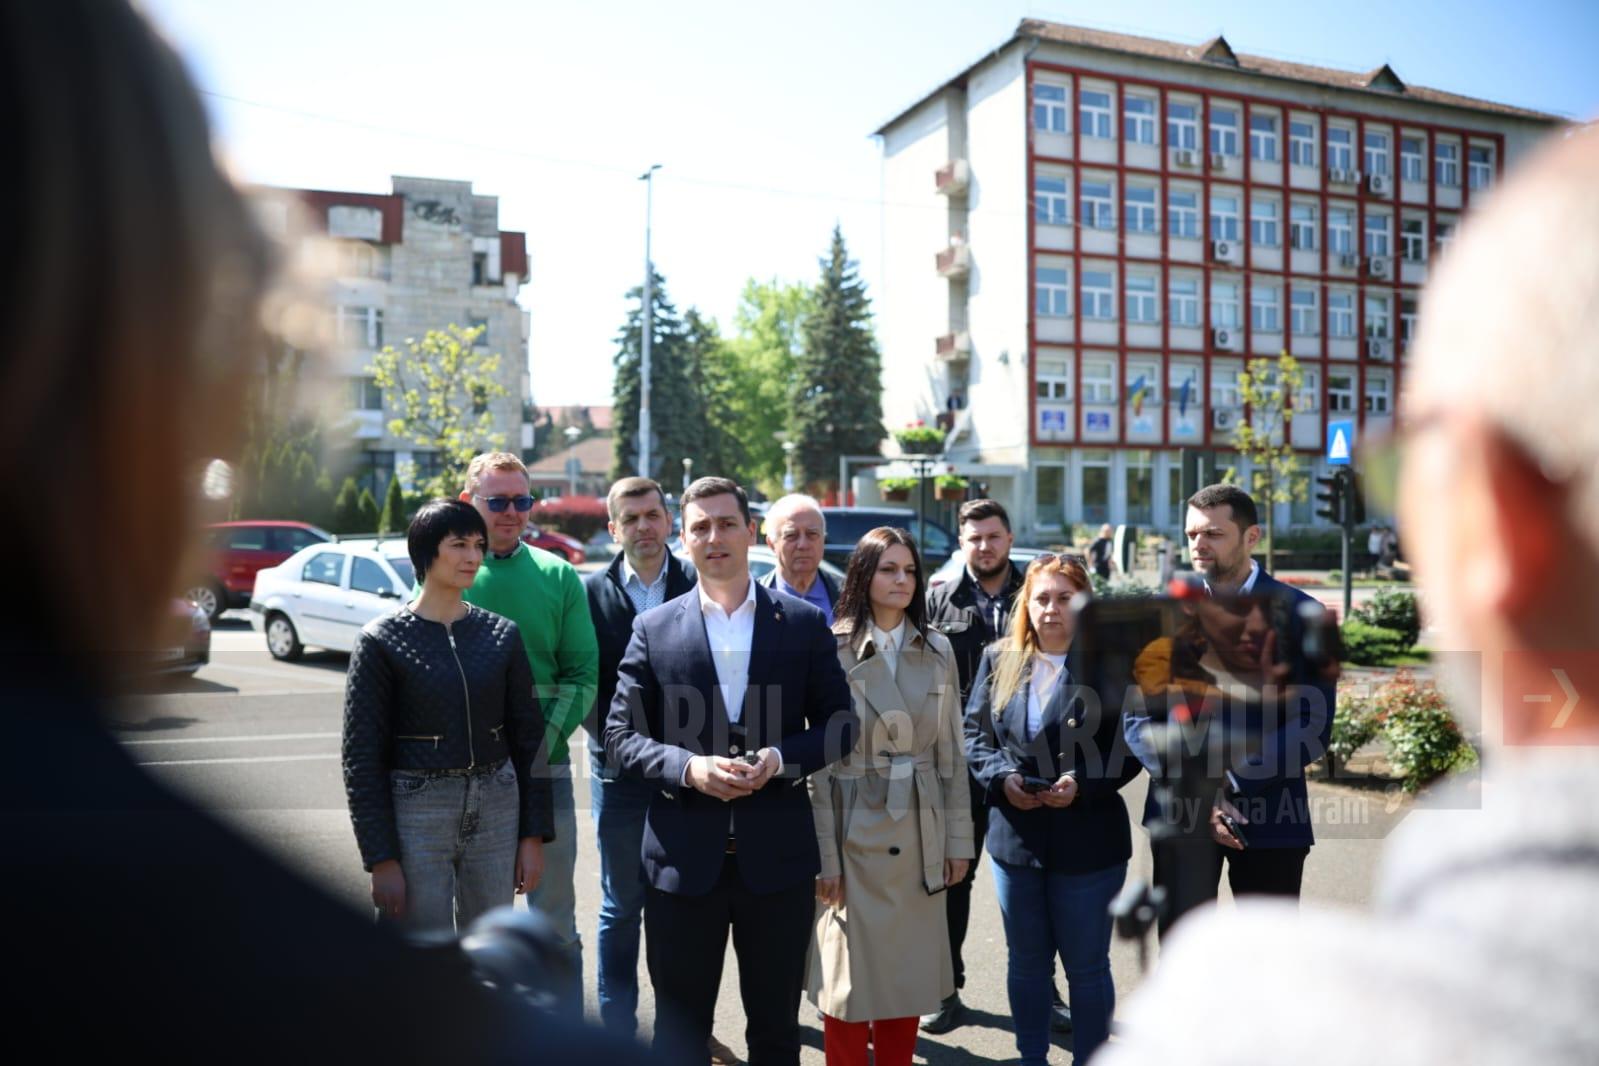 PNL Maramureș face apel la o campanie electorală curată și condamnă public atacurile personale lansate de PSD Maramureș